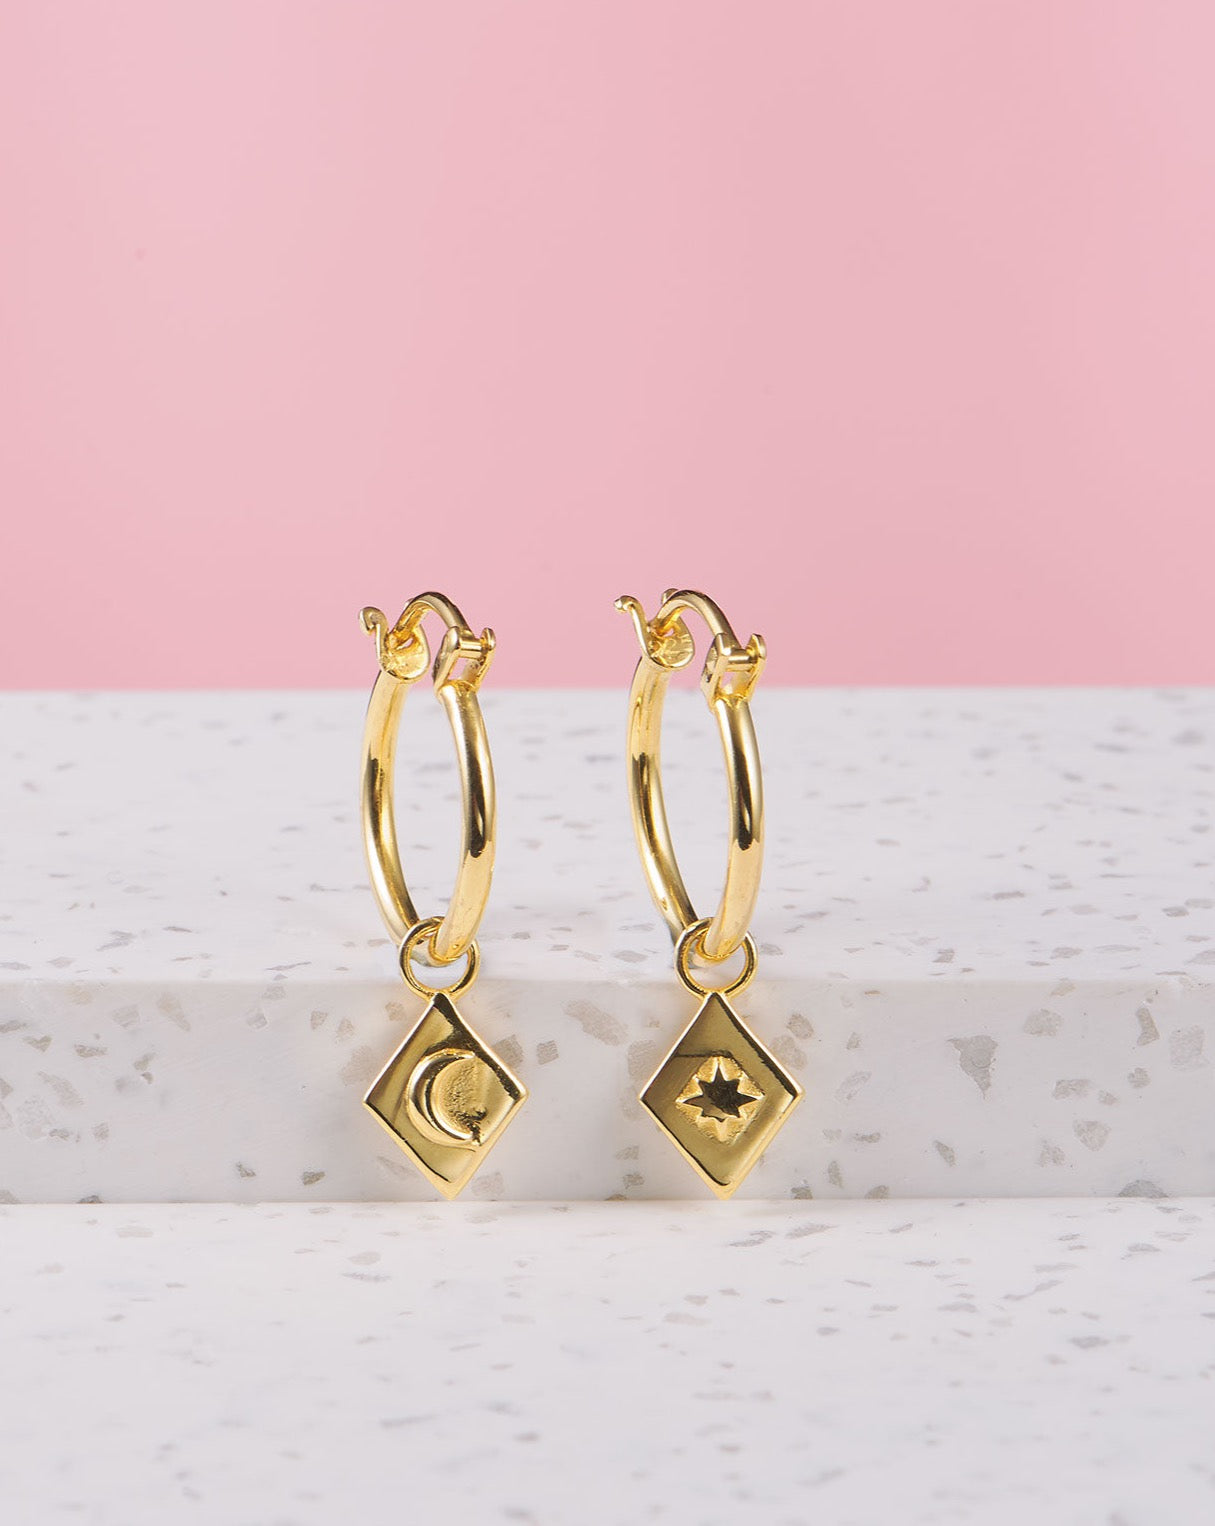 goldene Kreolen mit Mond Anhänger | Schmuck aus Bali | VERLAN Jewellery | das perfekte Geschenk für Freundin finden | nickelfreier Schmuck